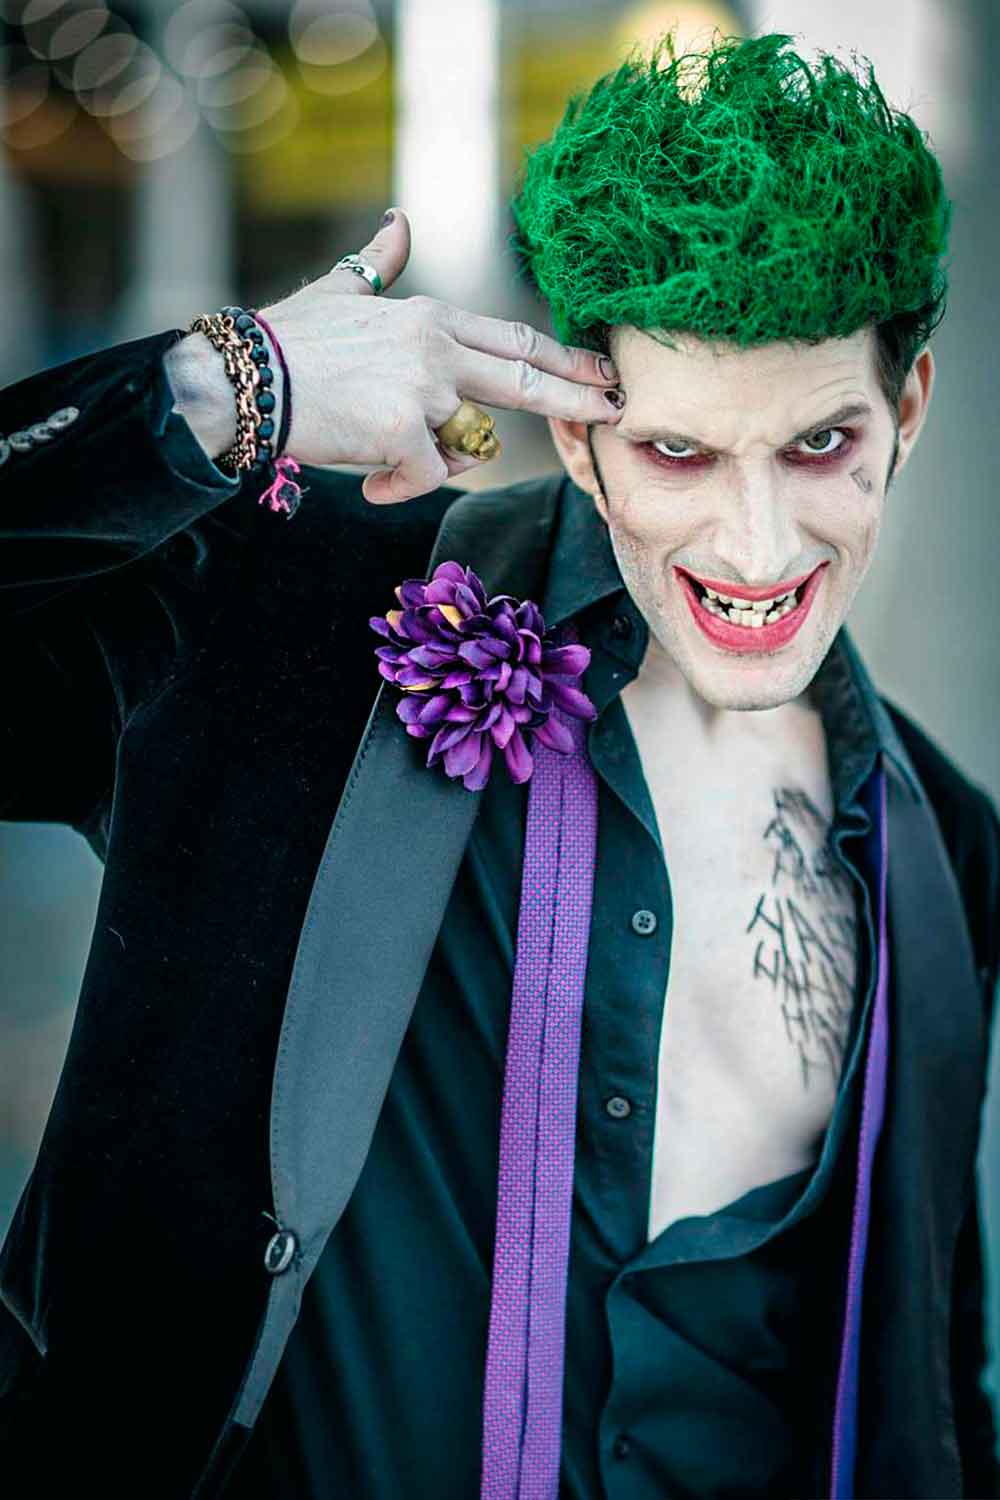 Joker #menshalloweencostumes #haloweencostumeideasmen #halloweencostumes